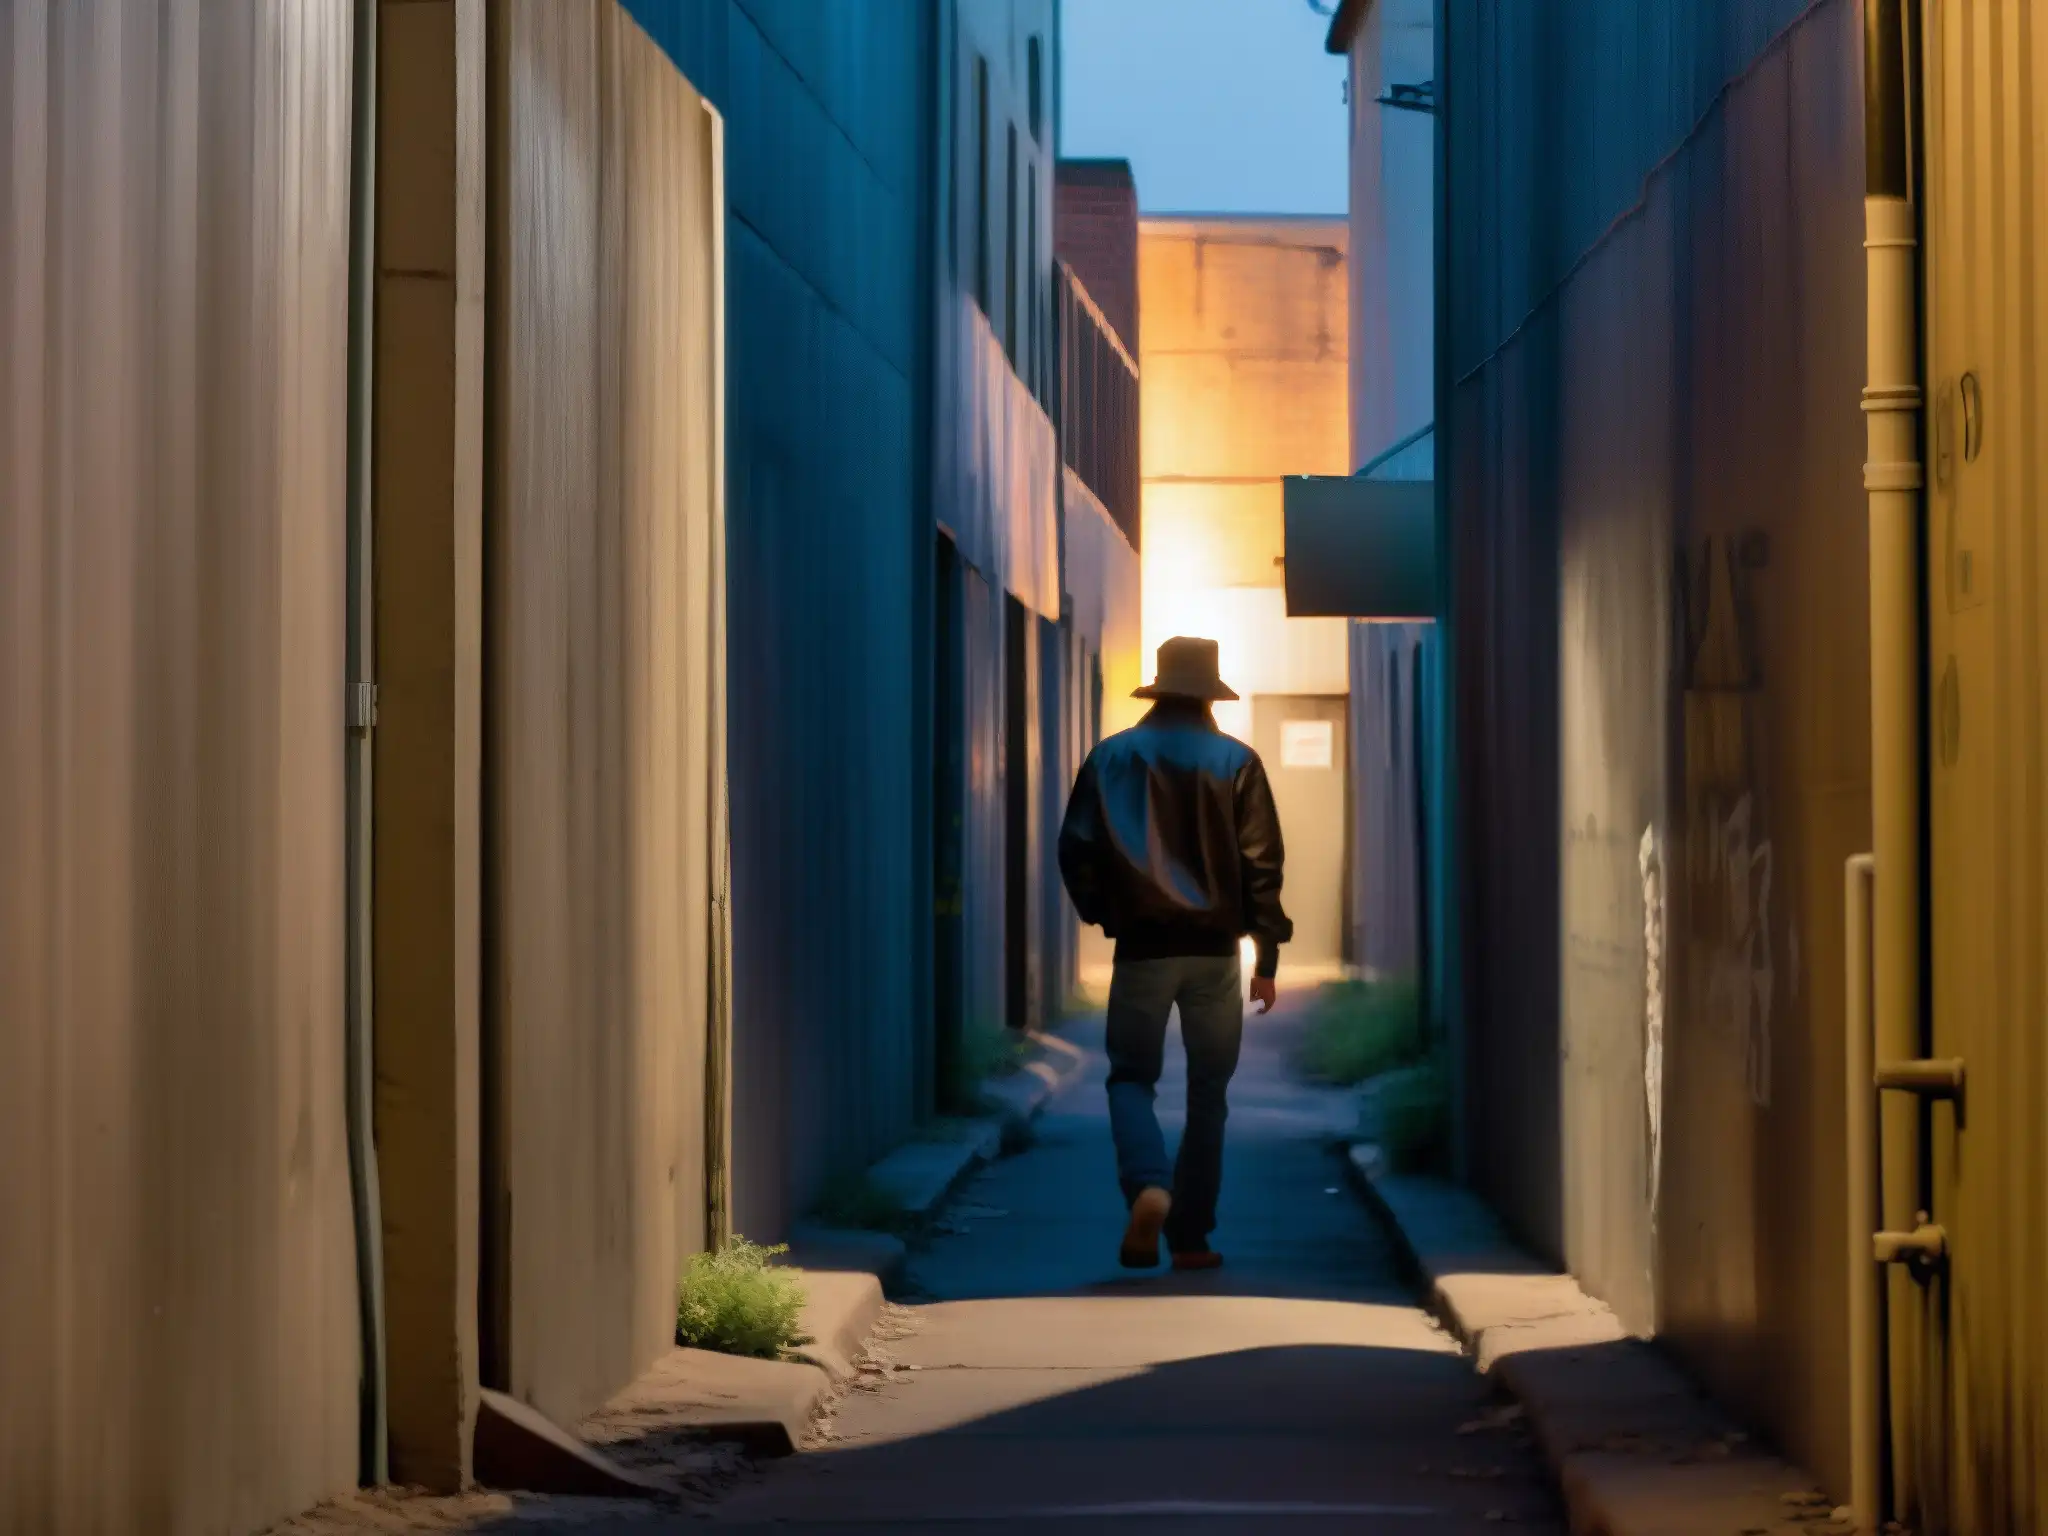 Alley sombría al anochecer en Sacramento, con figura solitaria entre sombras